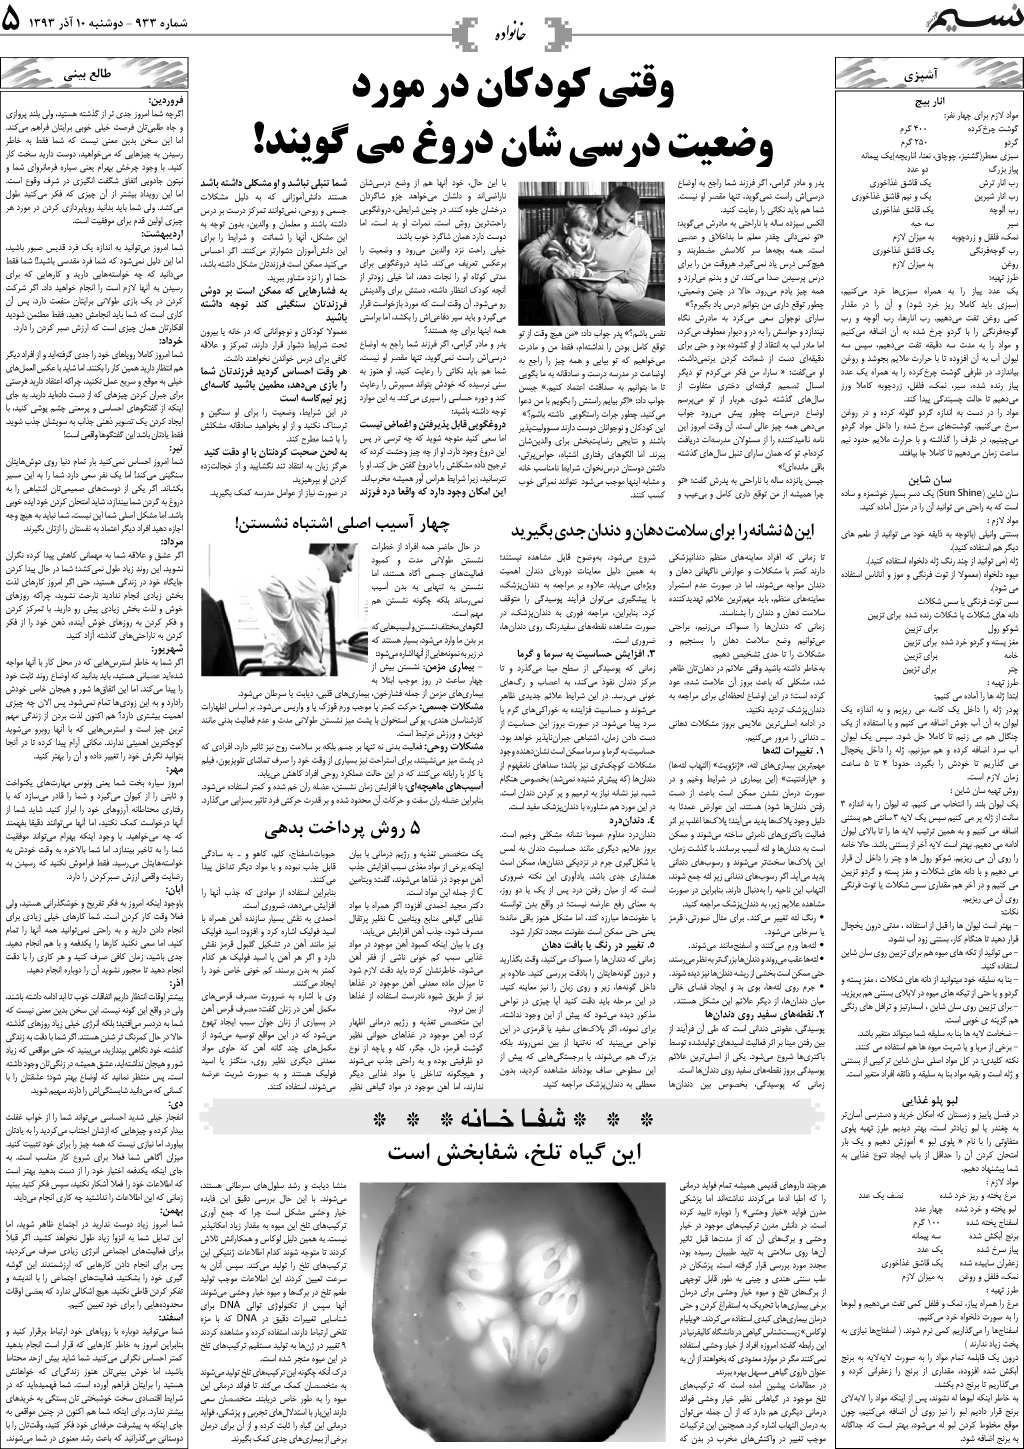 صفحه خانواده روزنامه نسیم شماره 933